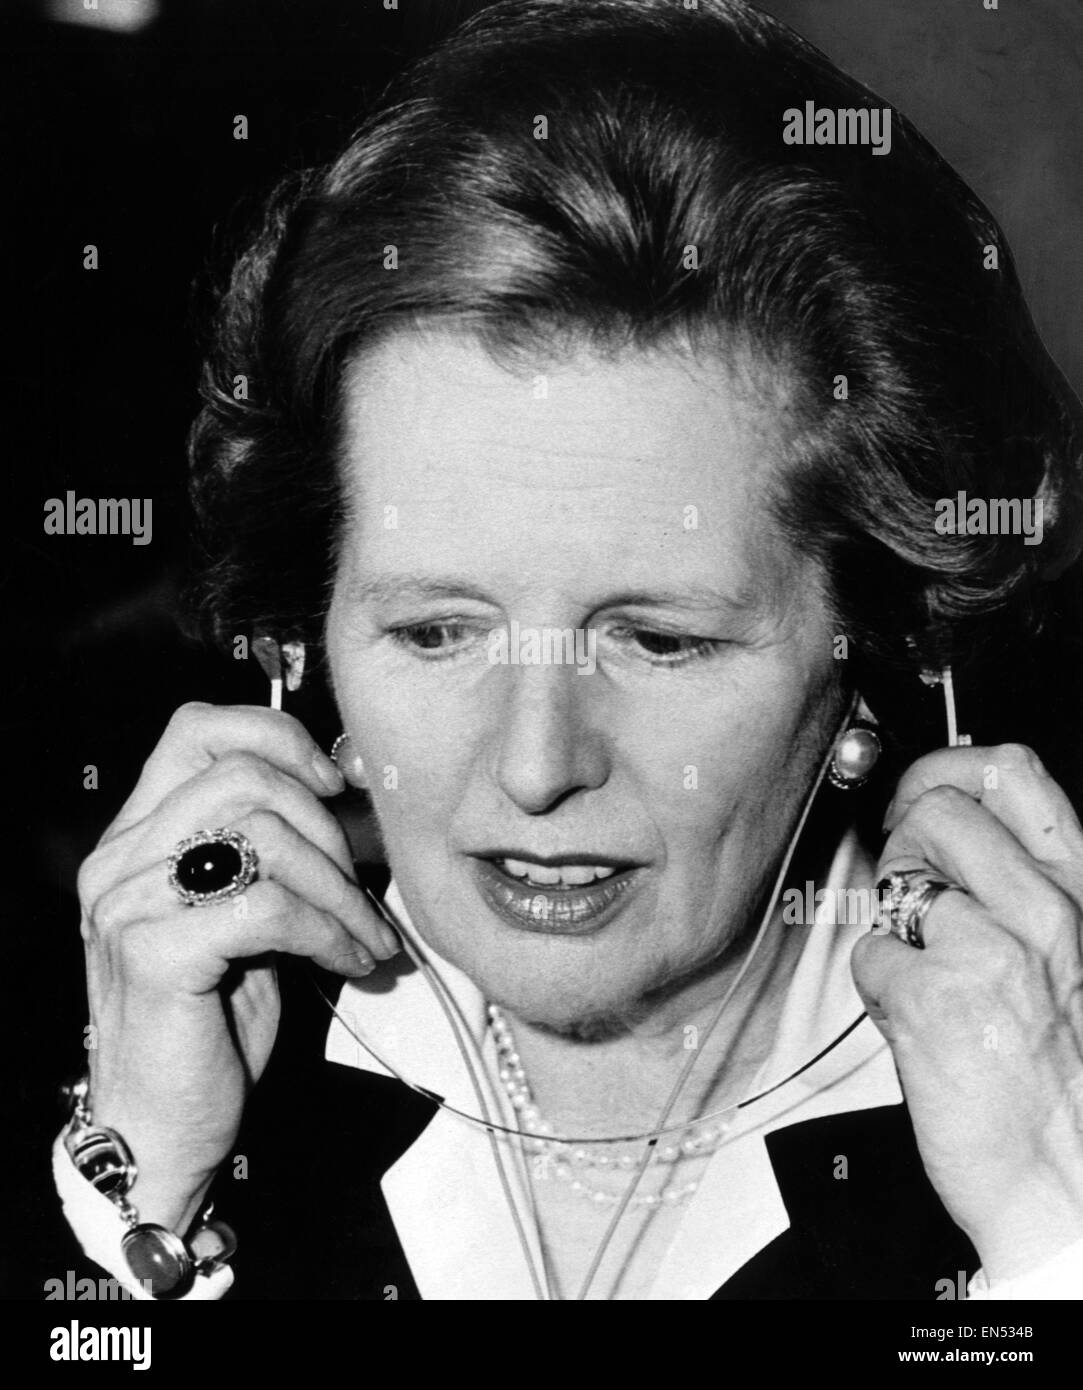 Premierministerin Margaret Thatcher probiert ein paar Kopfhörer - Verstärker - bei Marconi in Schottland 2. Juni 1987. Stockfoto